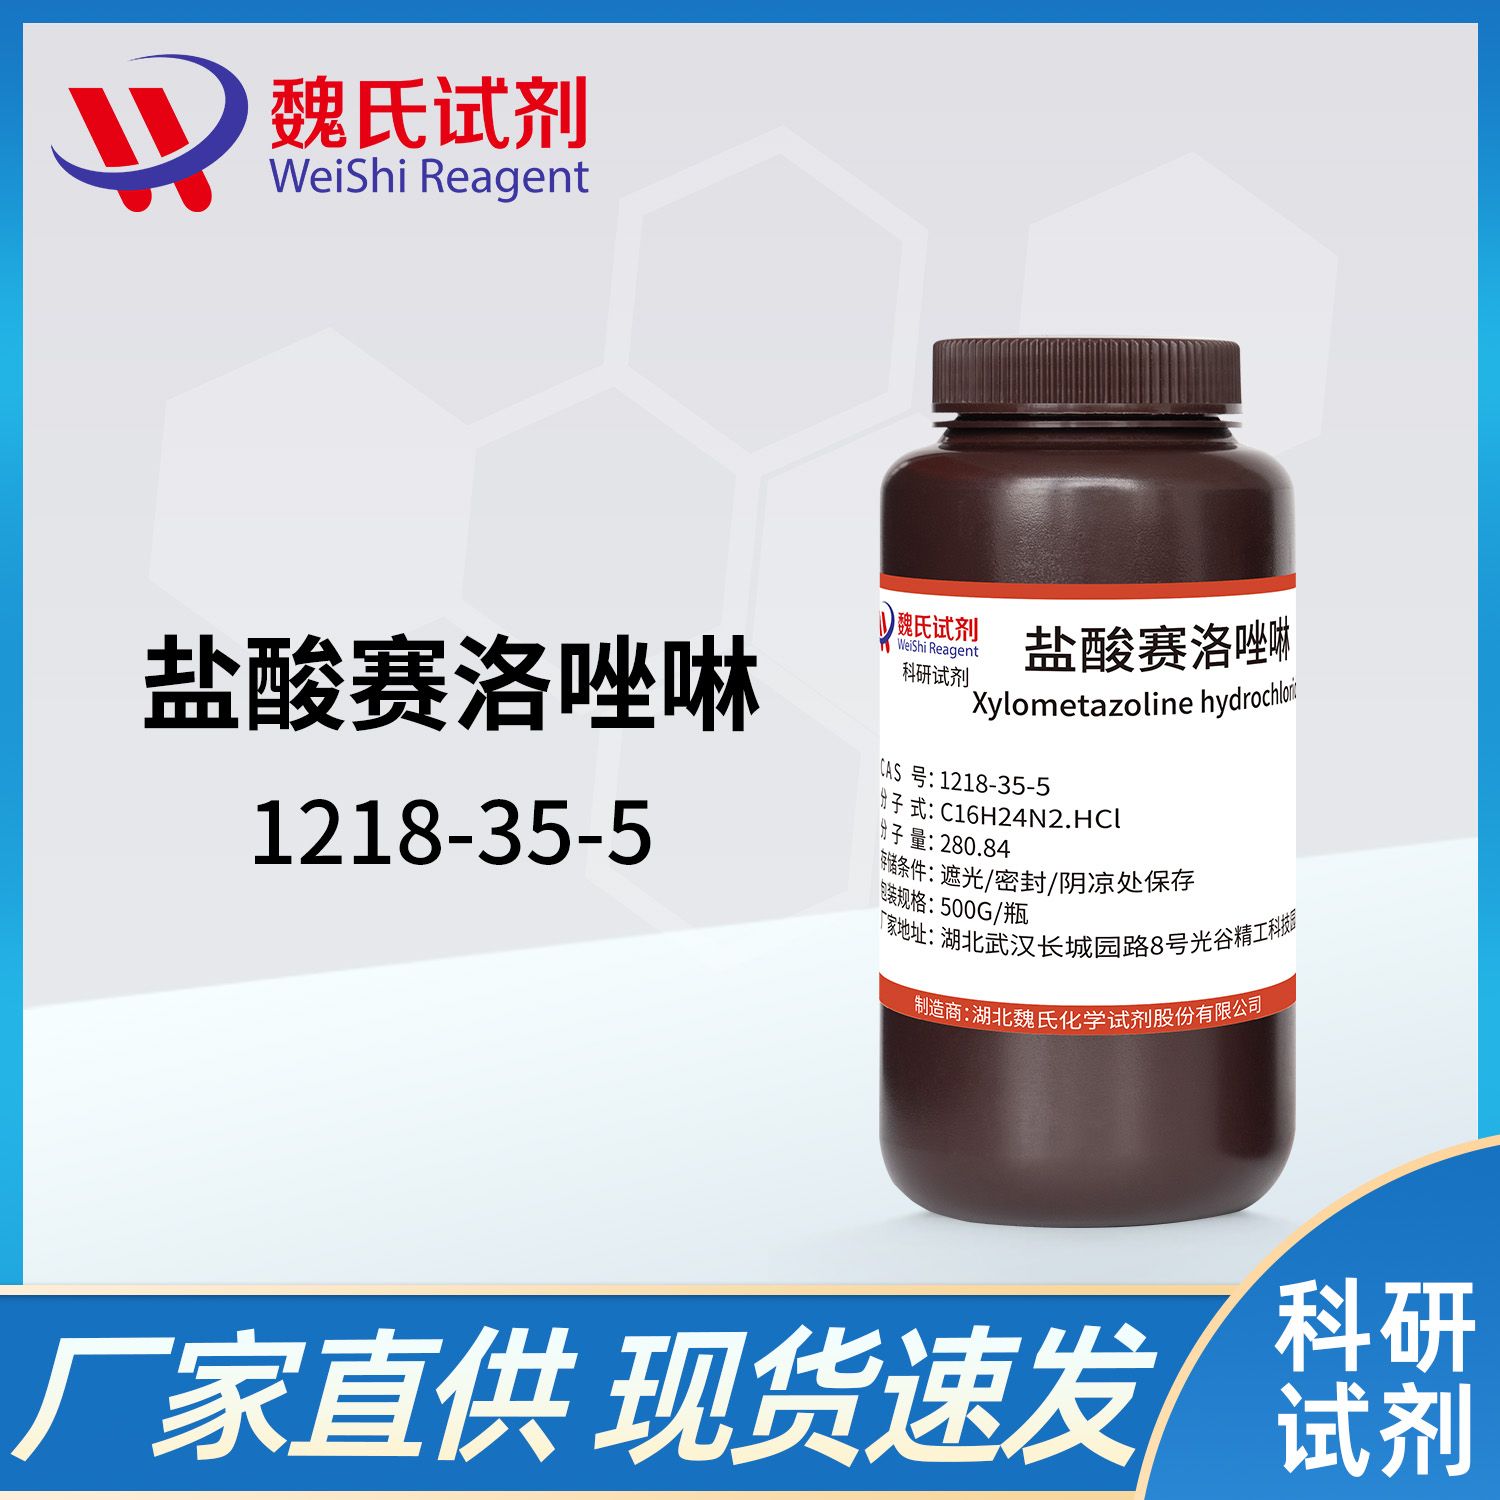 1218-35-5 /盐酸赛洛唑啉/Xylometazoline hydrochloride